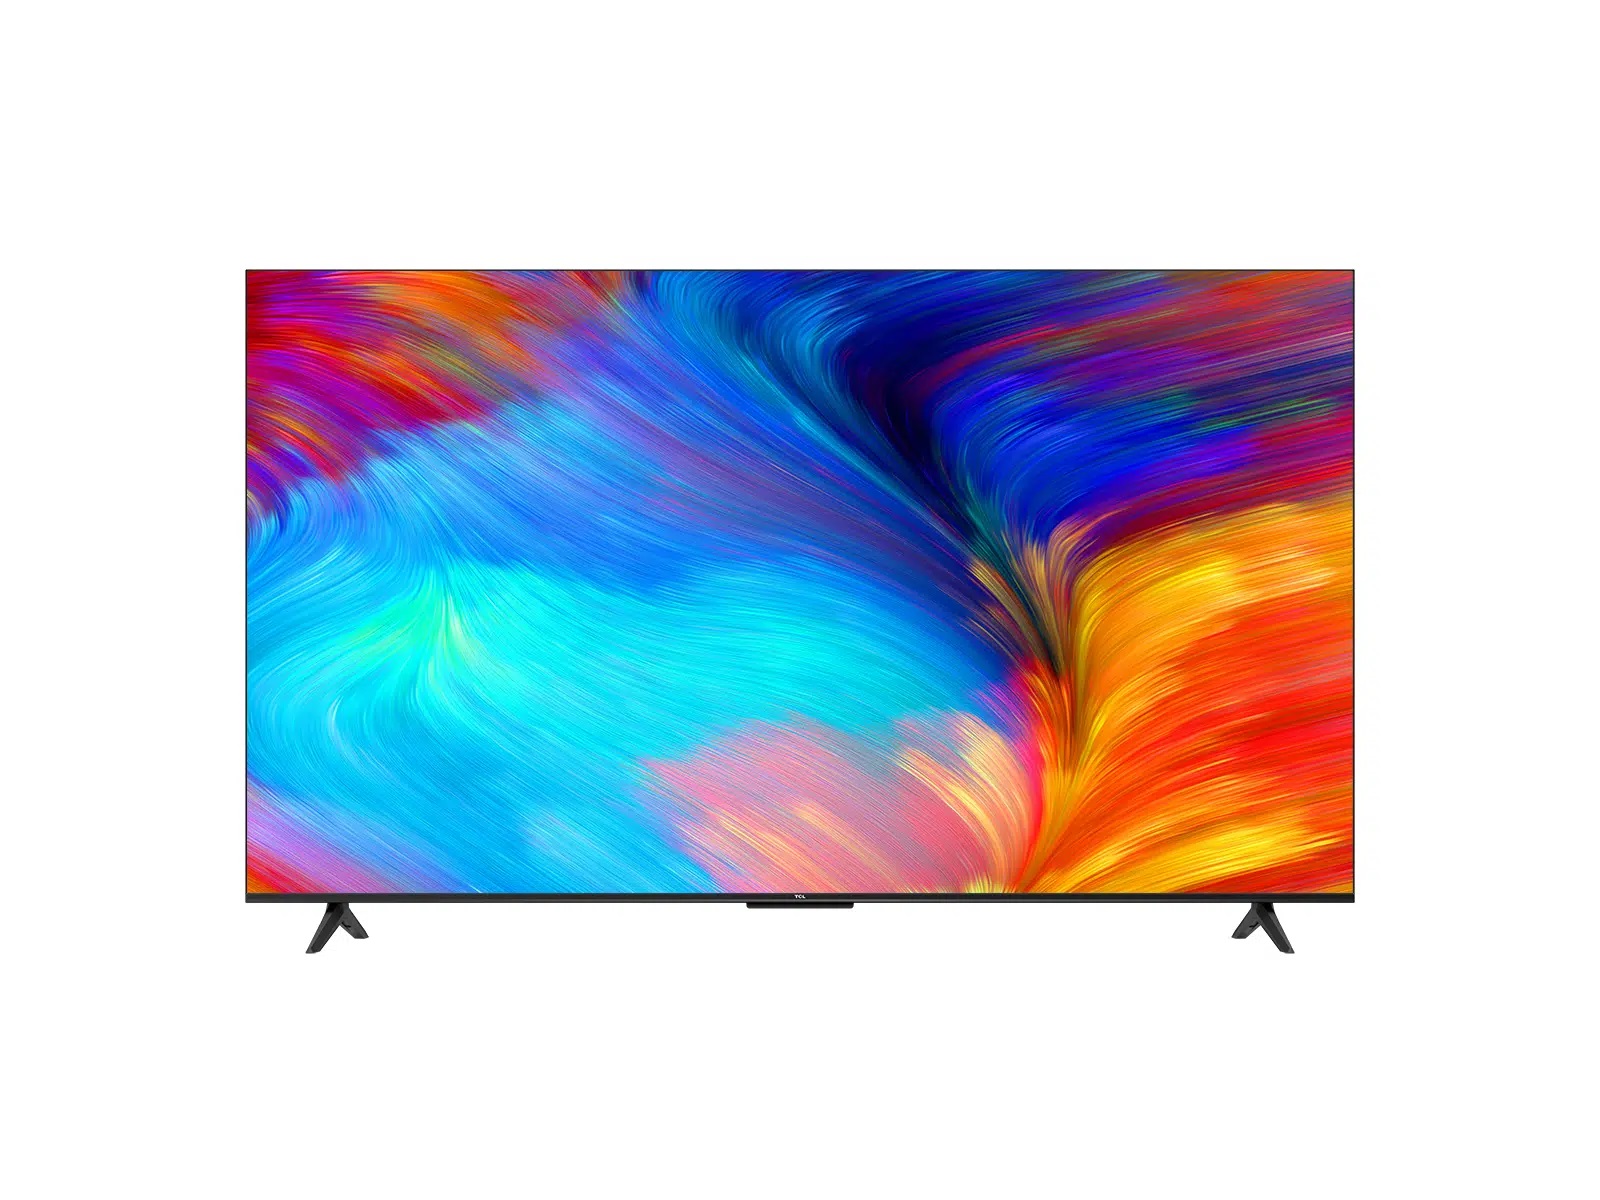 Телевизор TCL 43P637, 43"(109 см), UHD 4K, купить в Москве, цены в интернет-магазинах на Мегамаркет